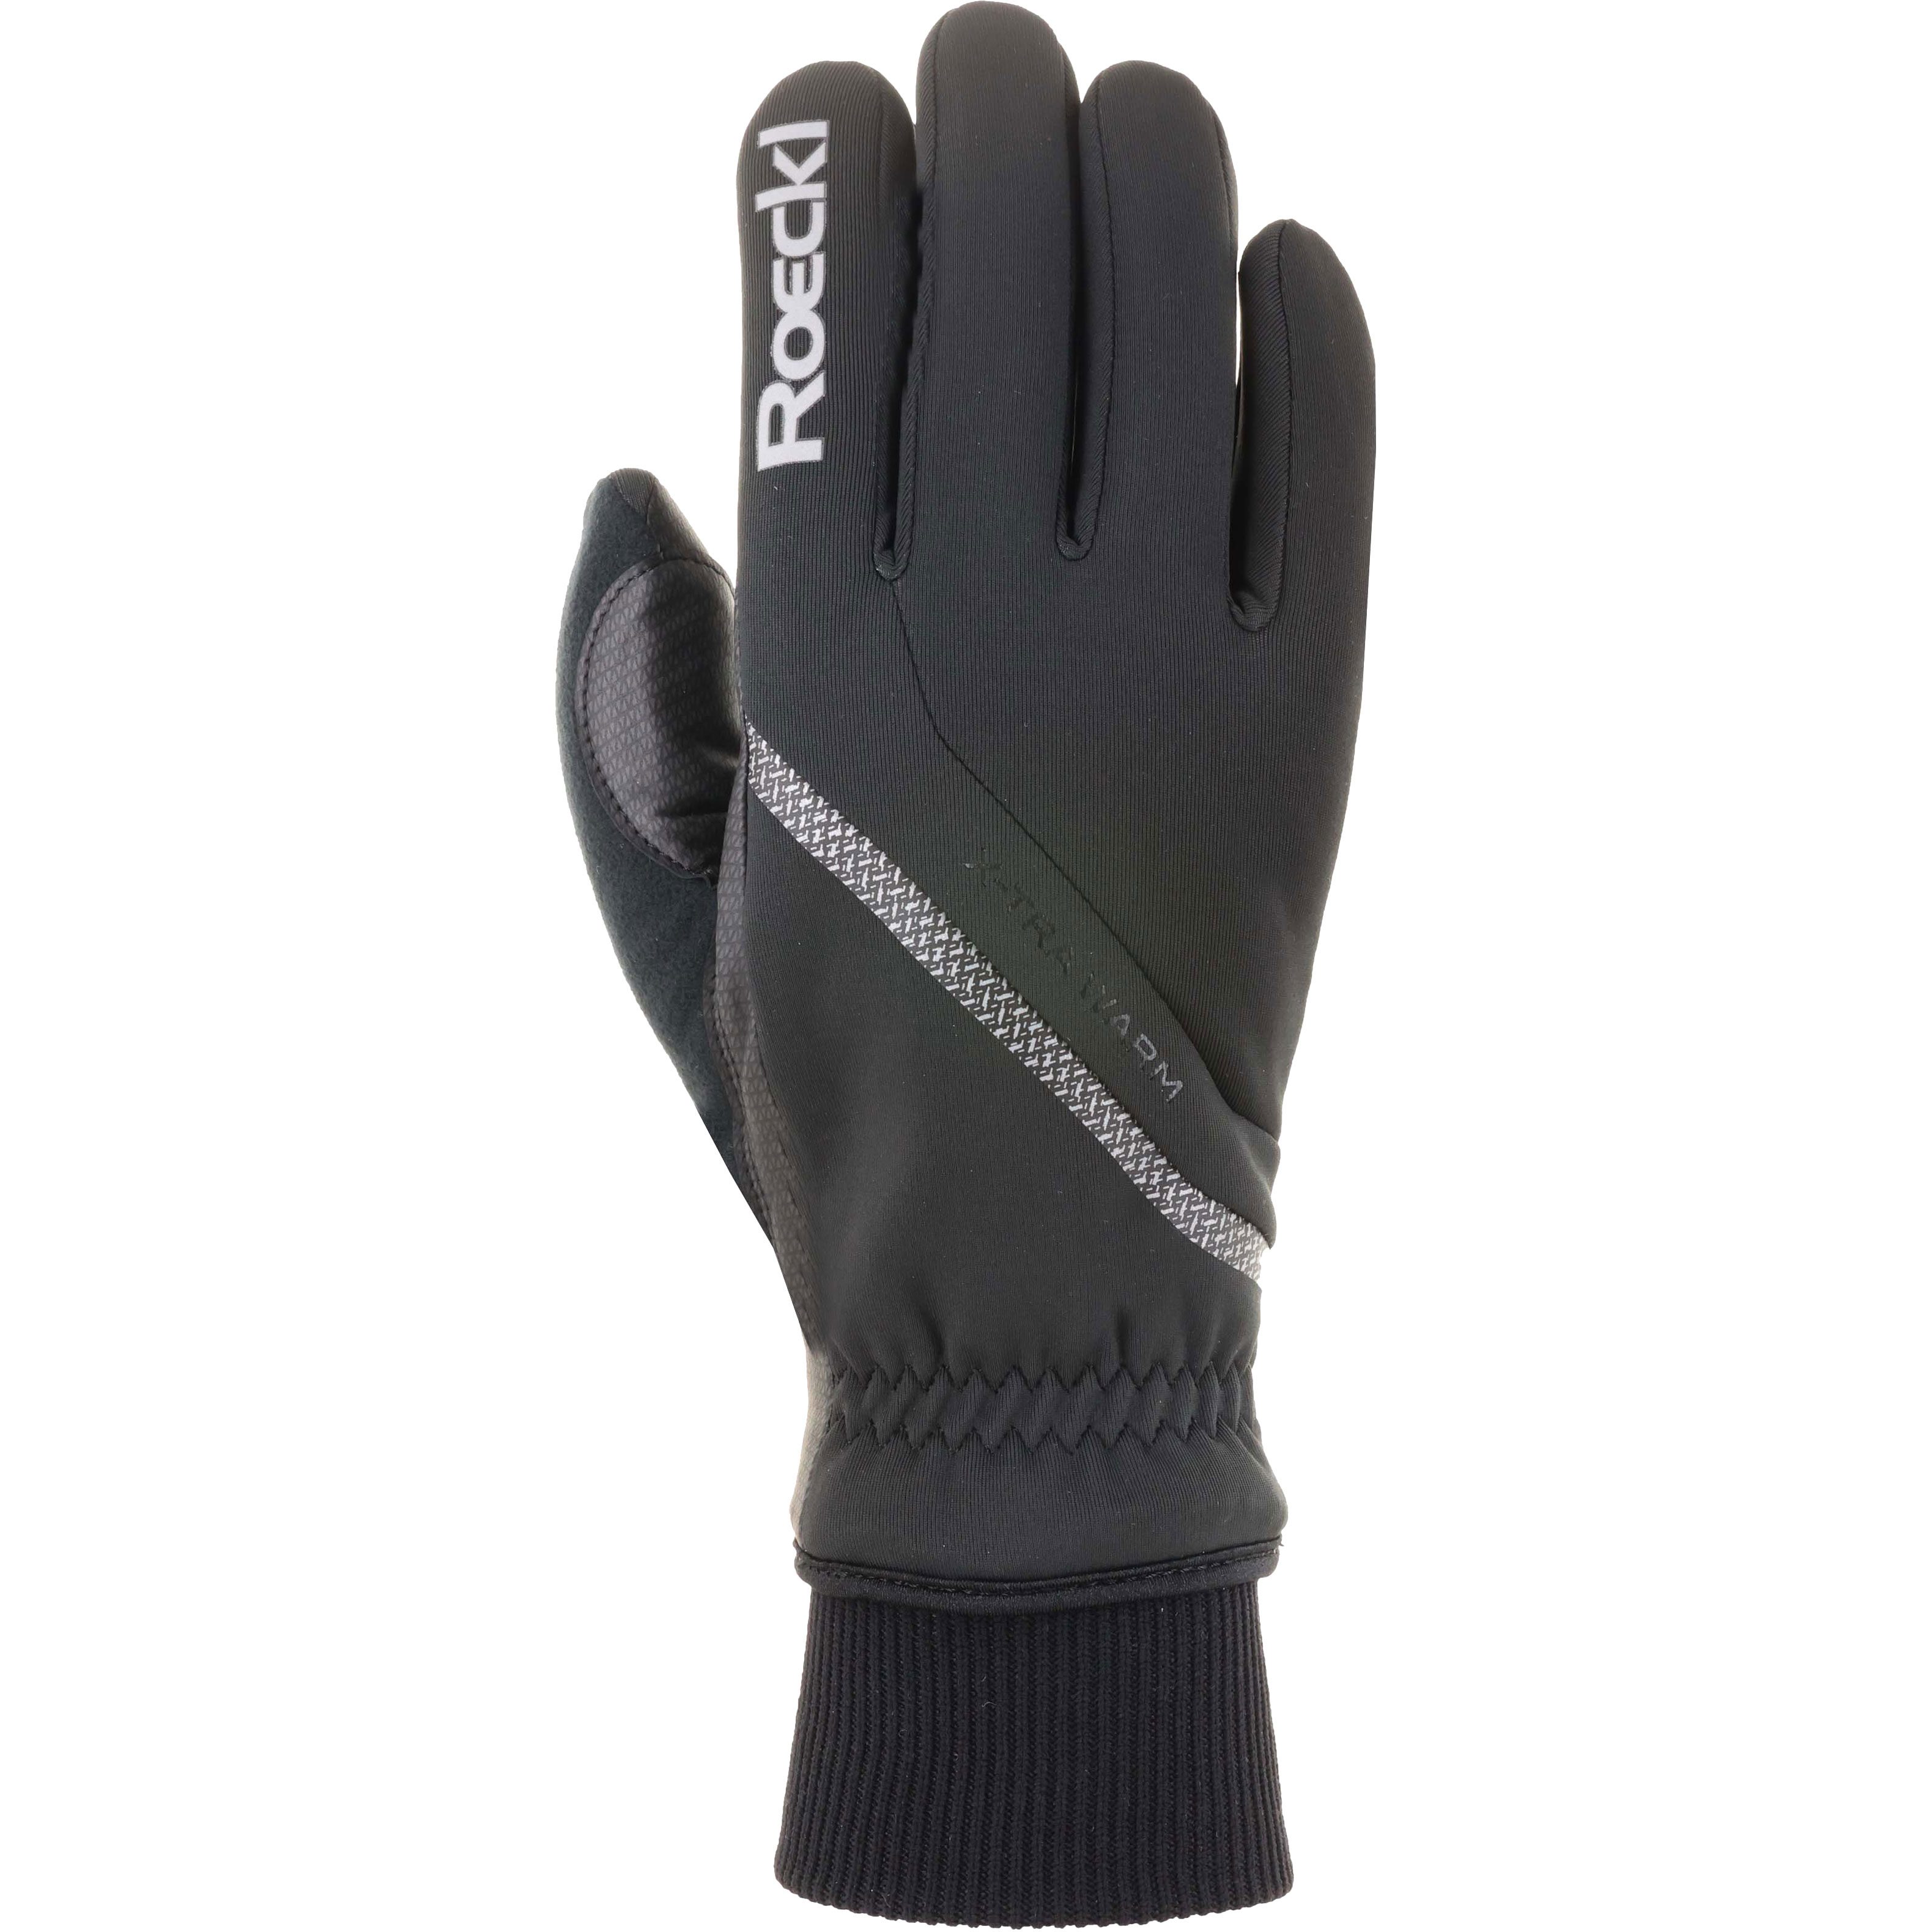 Roeckl Sports - Tesero Handschuhe schwarz kaufen im Sport Bittl Shop